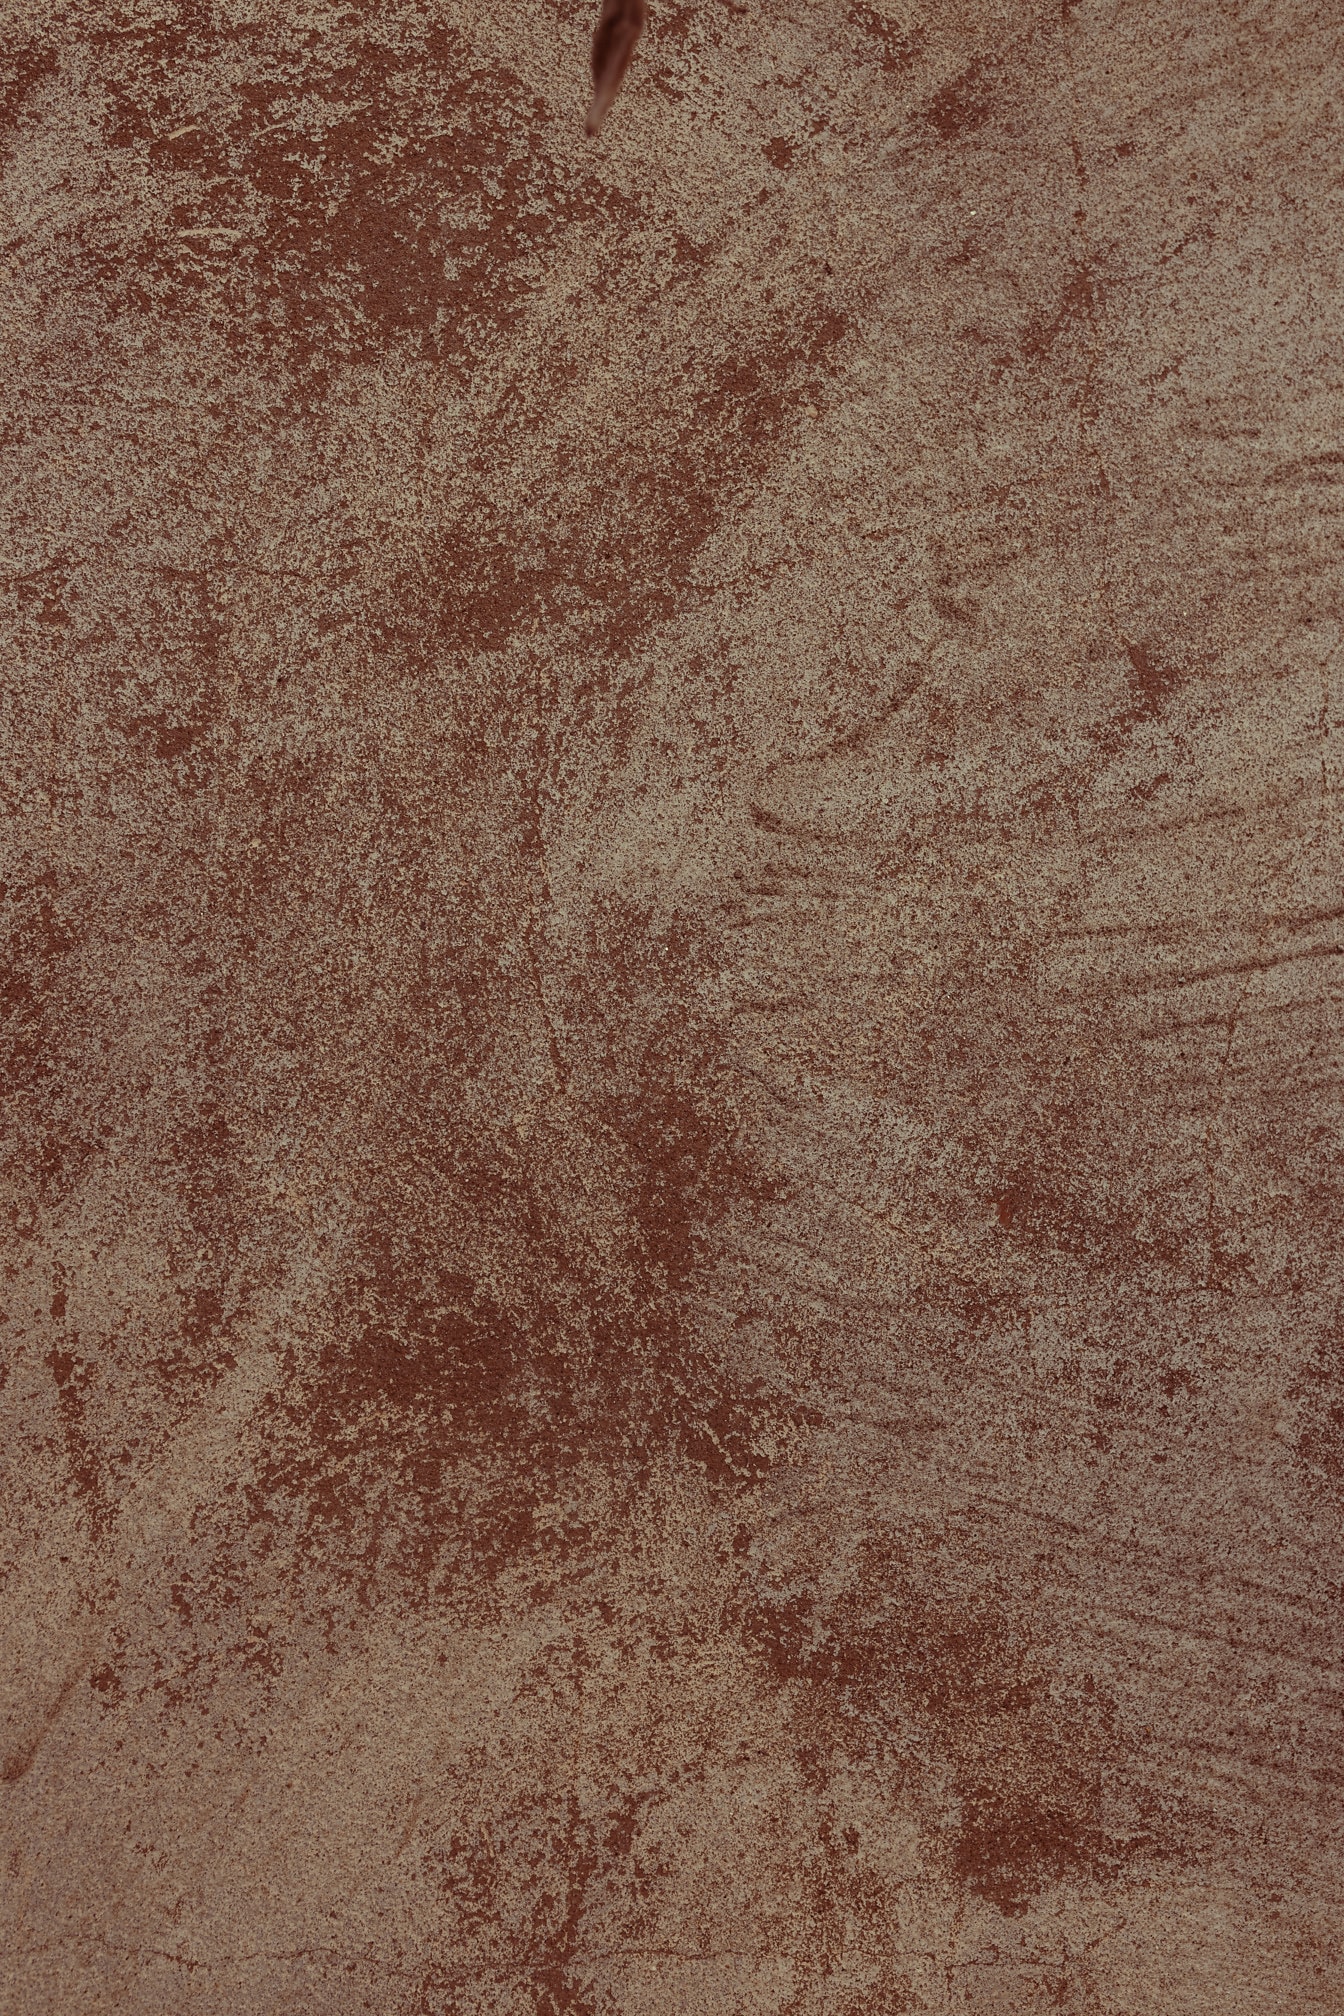 Червонувато-бежева, брудно-цементна текстура поверхні крупним планом